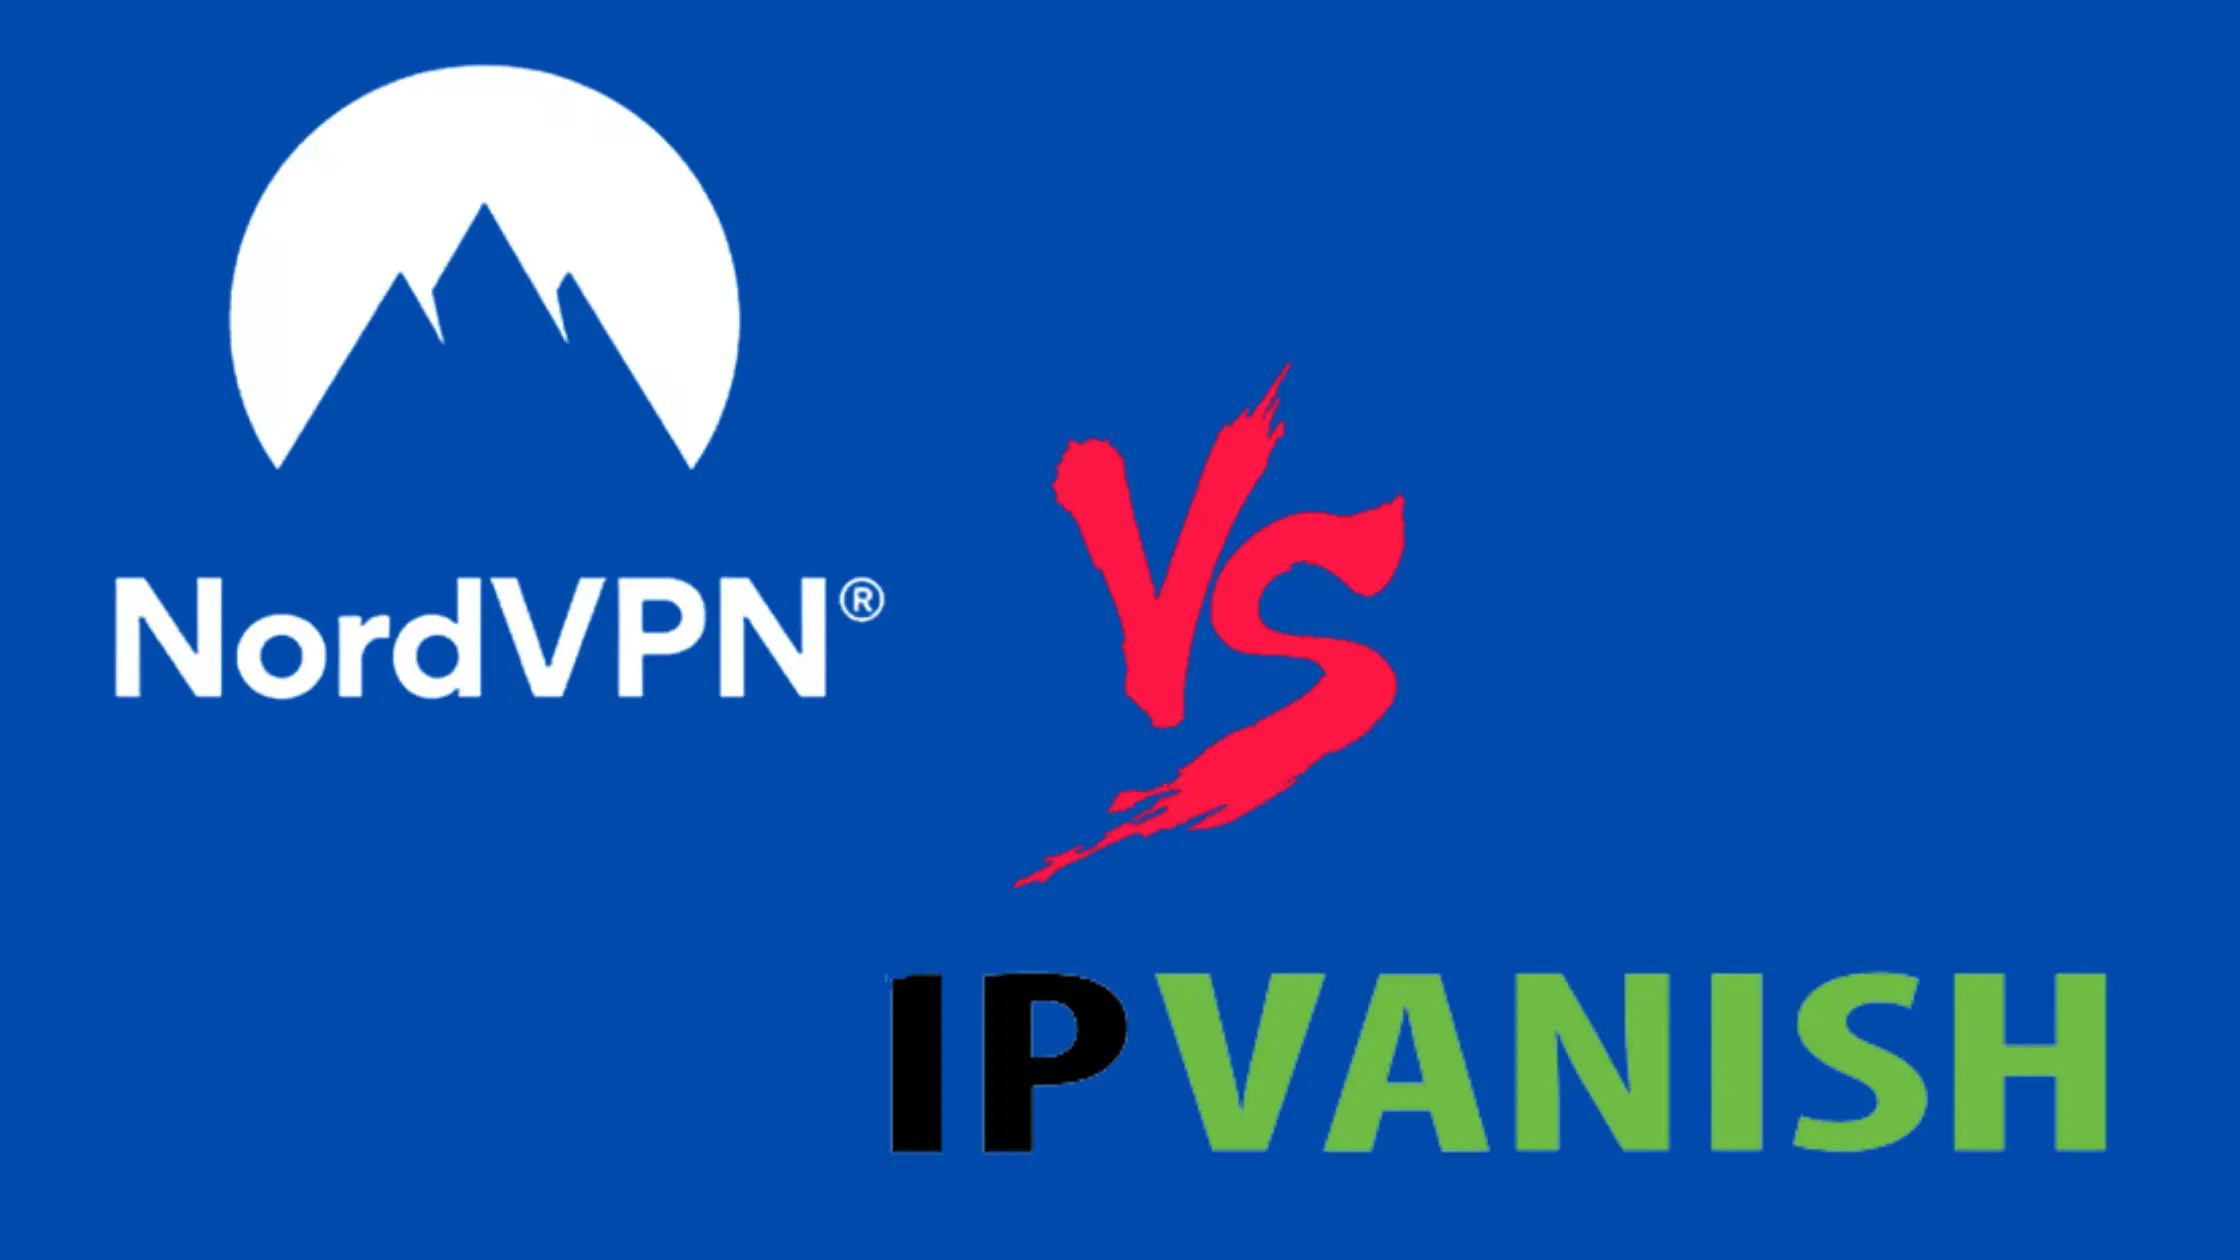 NordVPN vs IPVanish